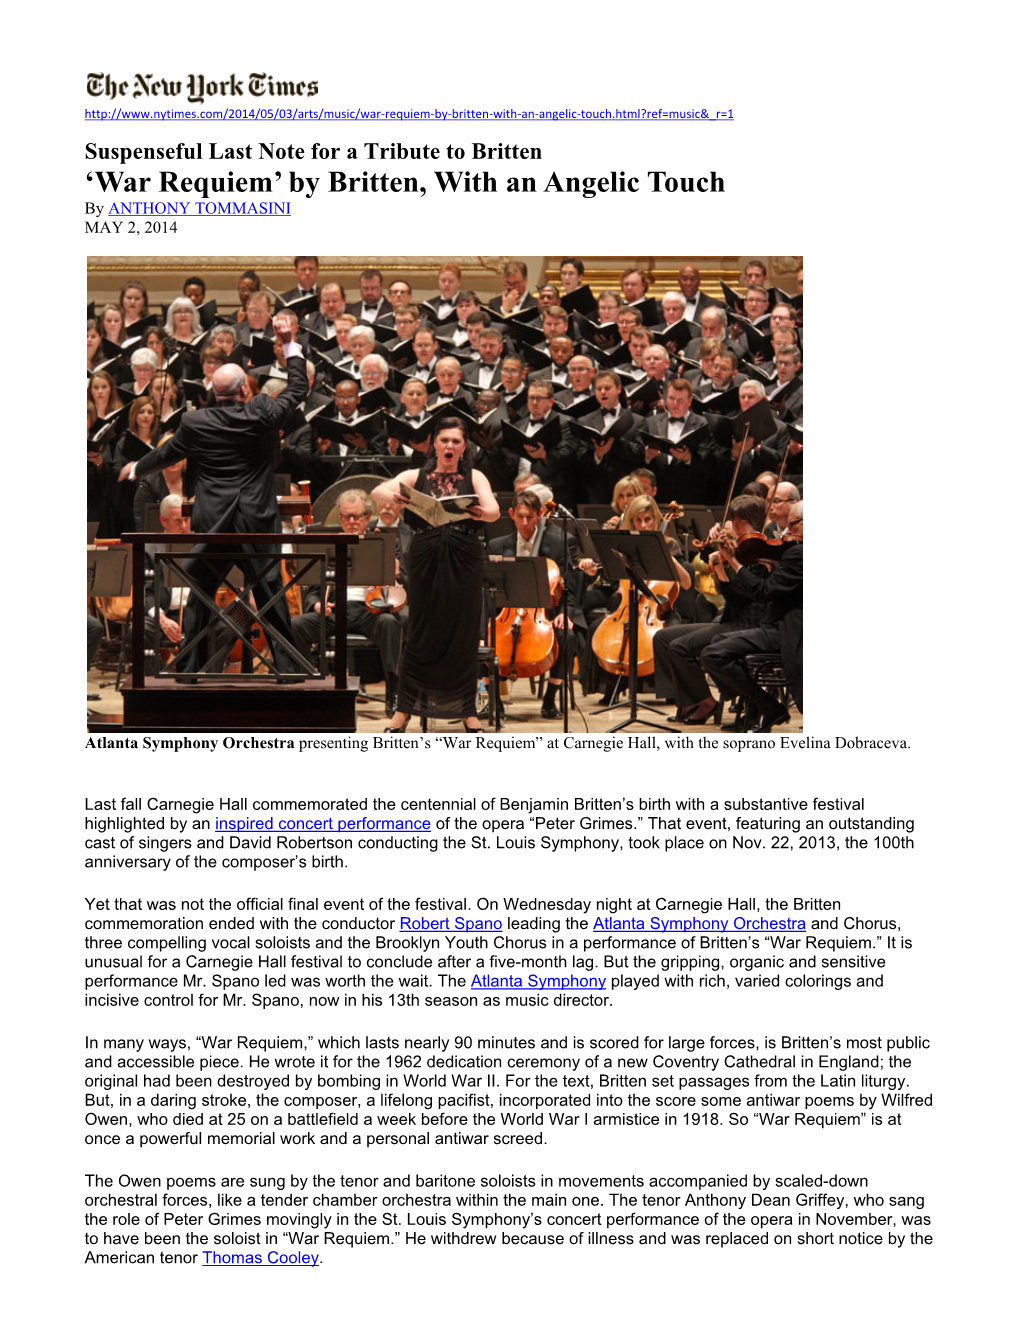 'War Requiem' by Britten, with an Angelic Touch